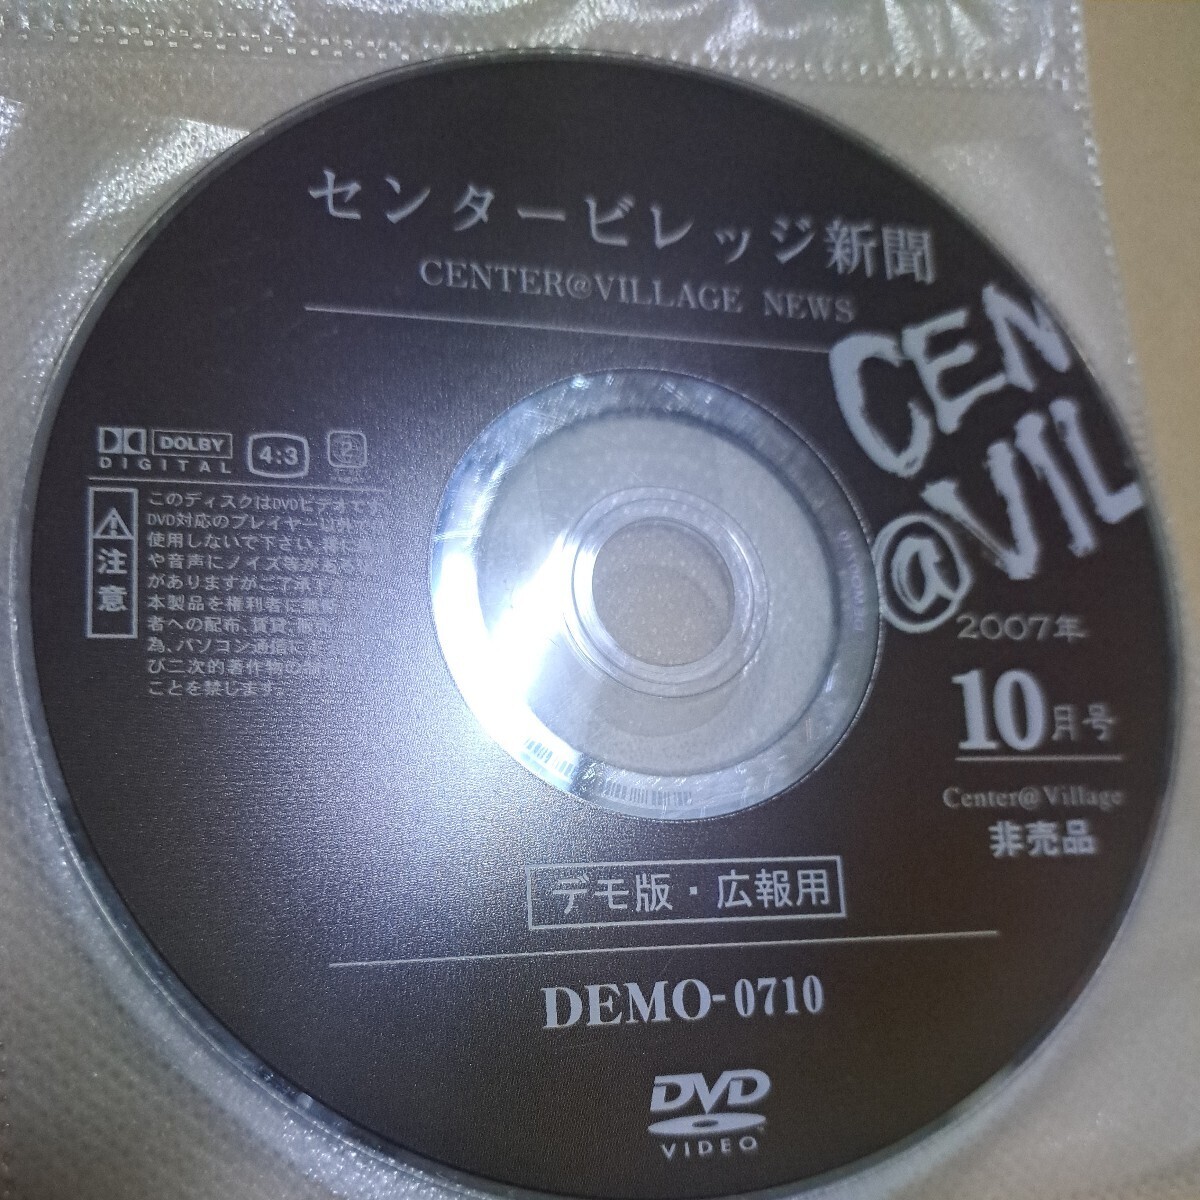  утиль центральный bireji газета 2007 год 10 месяц номер не продается demo версия широкий . для DVD диск только 